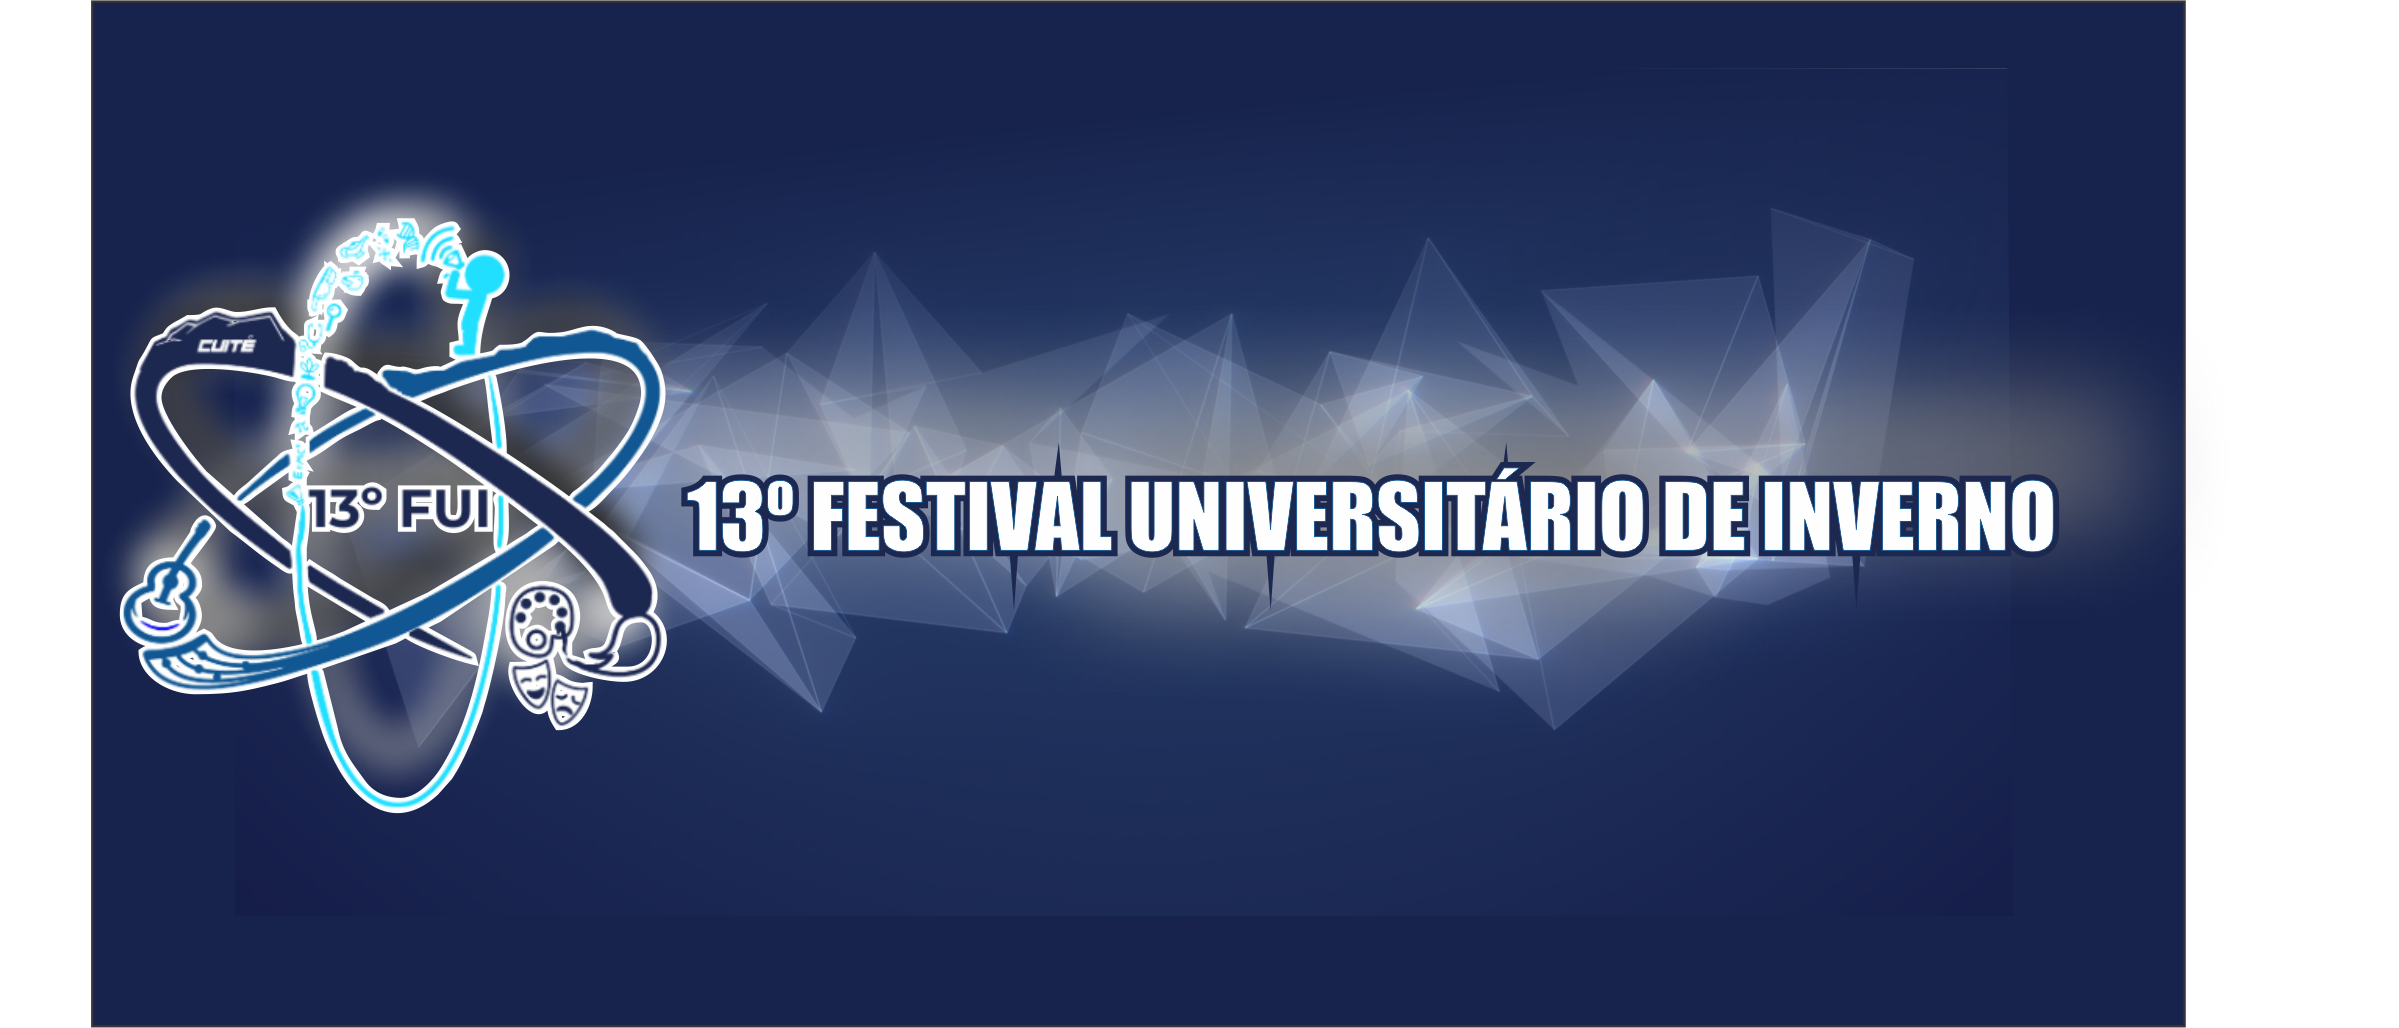 12º FUI -  Festival Universitário de Inverno